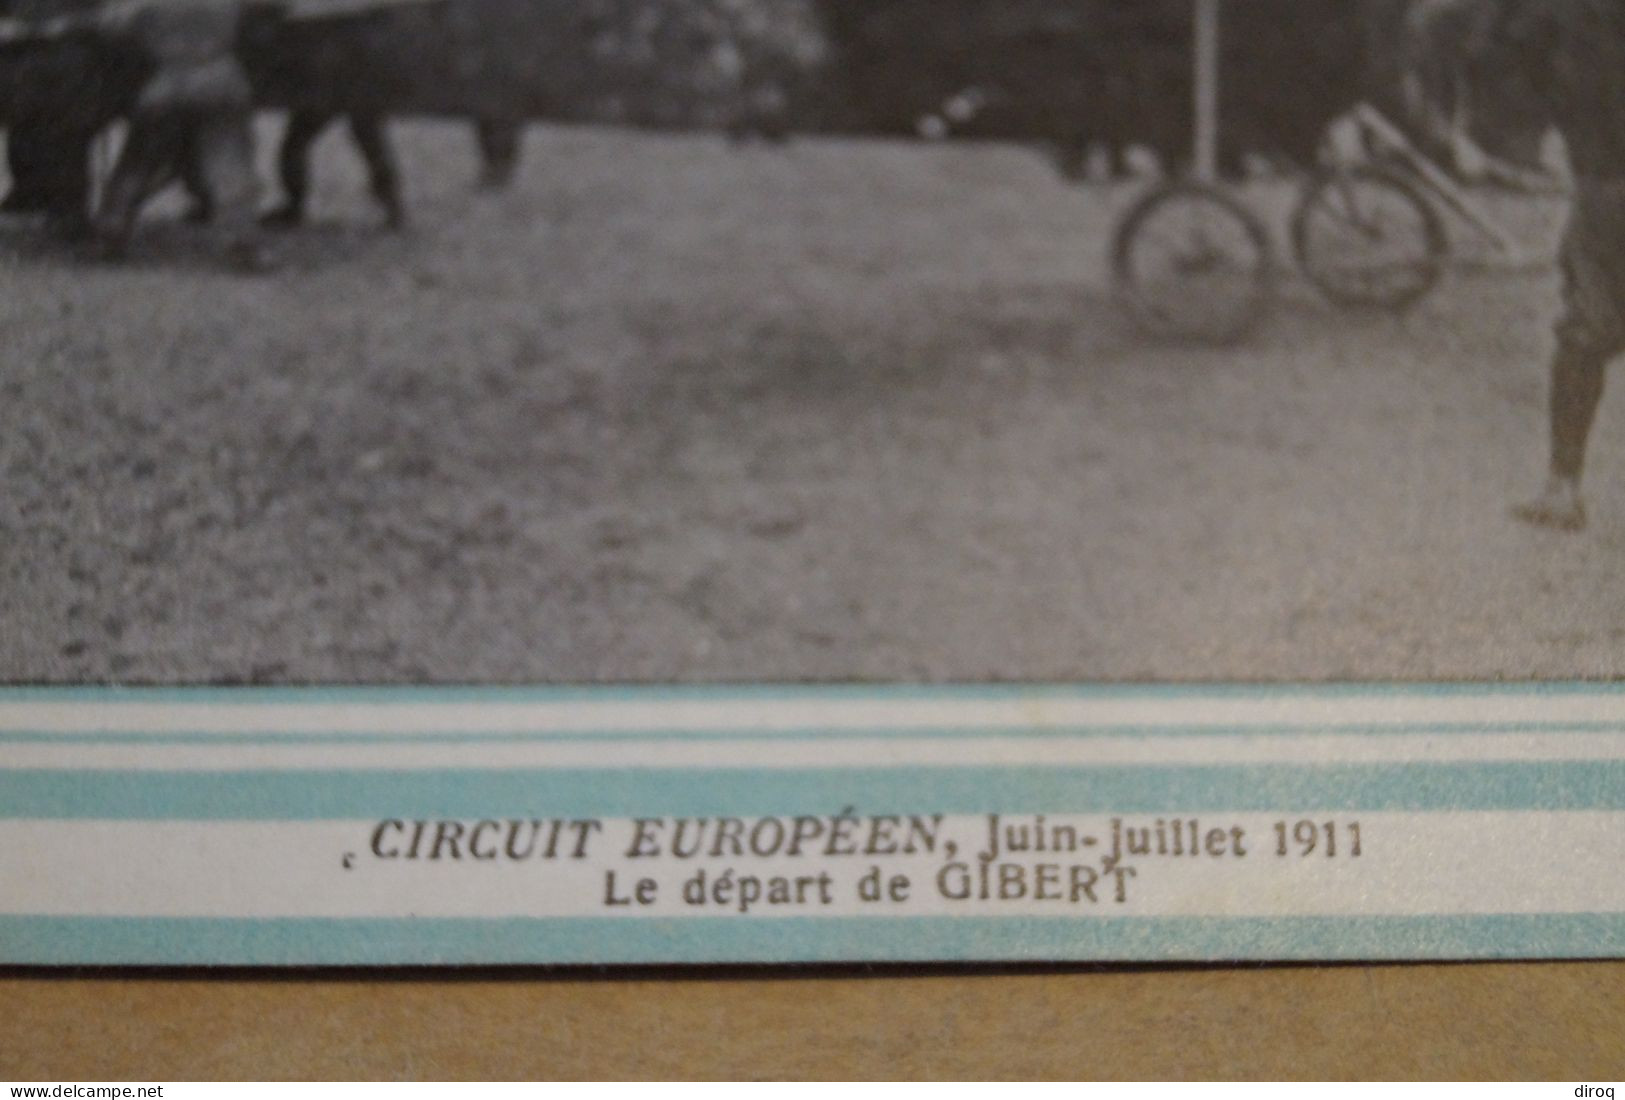 CIRCUIT EUROPEEN DE JUIN - JUILLET 1911,monoplan Rep,belle Carte Ancienne - Demonstraties